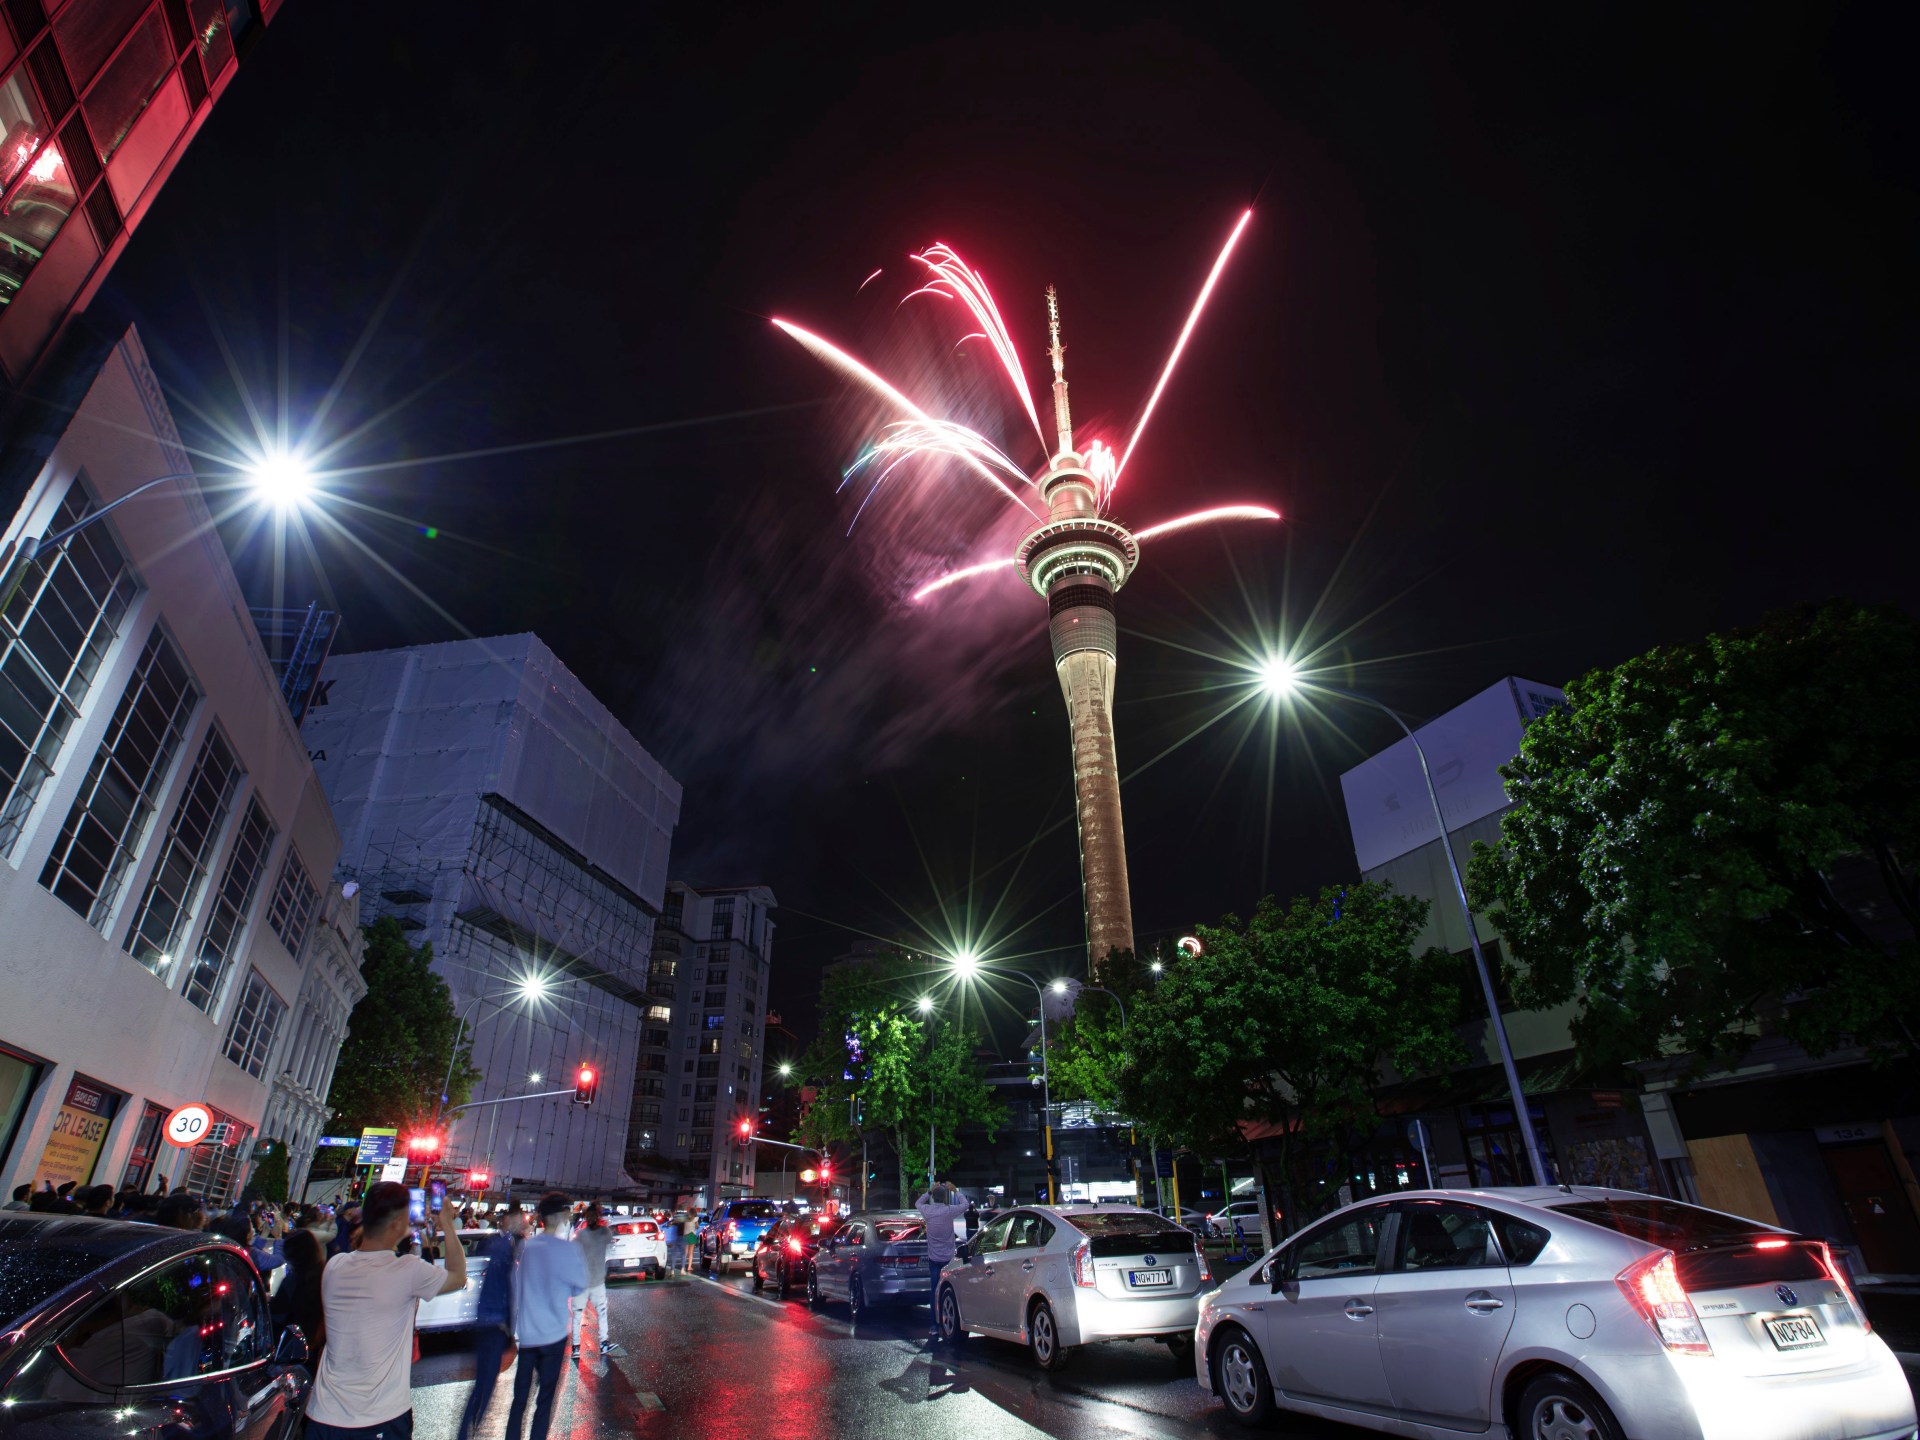 Il mondo accoglie il nuovo anno con fuochi d'artificio e preghiere  Notizia